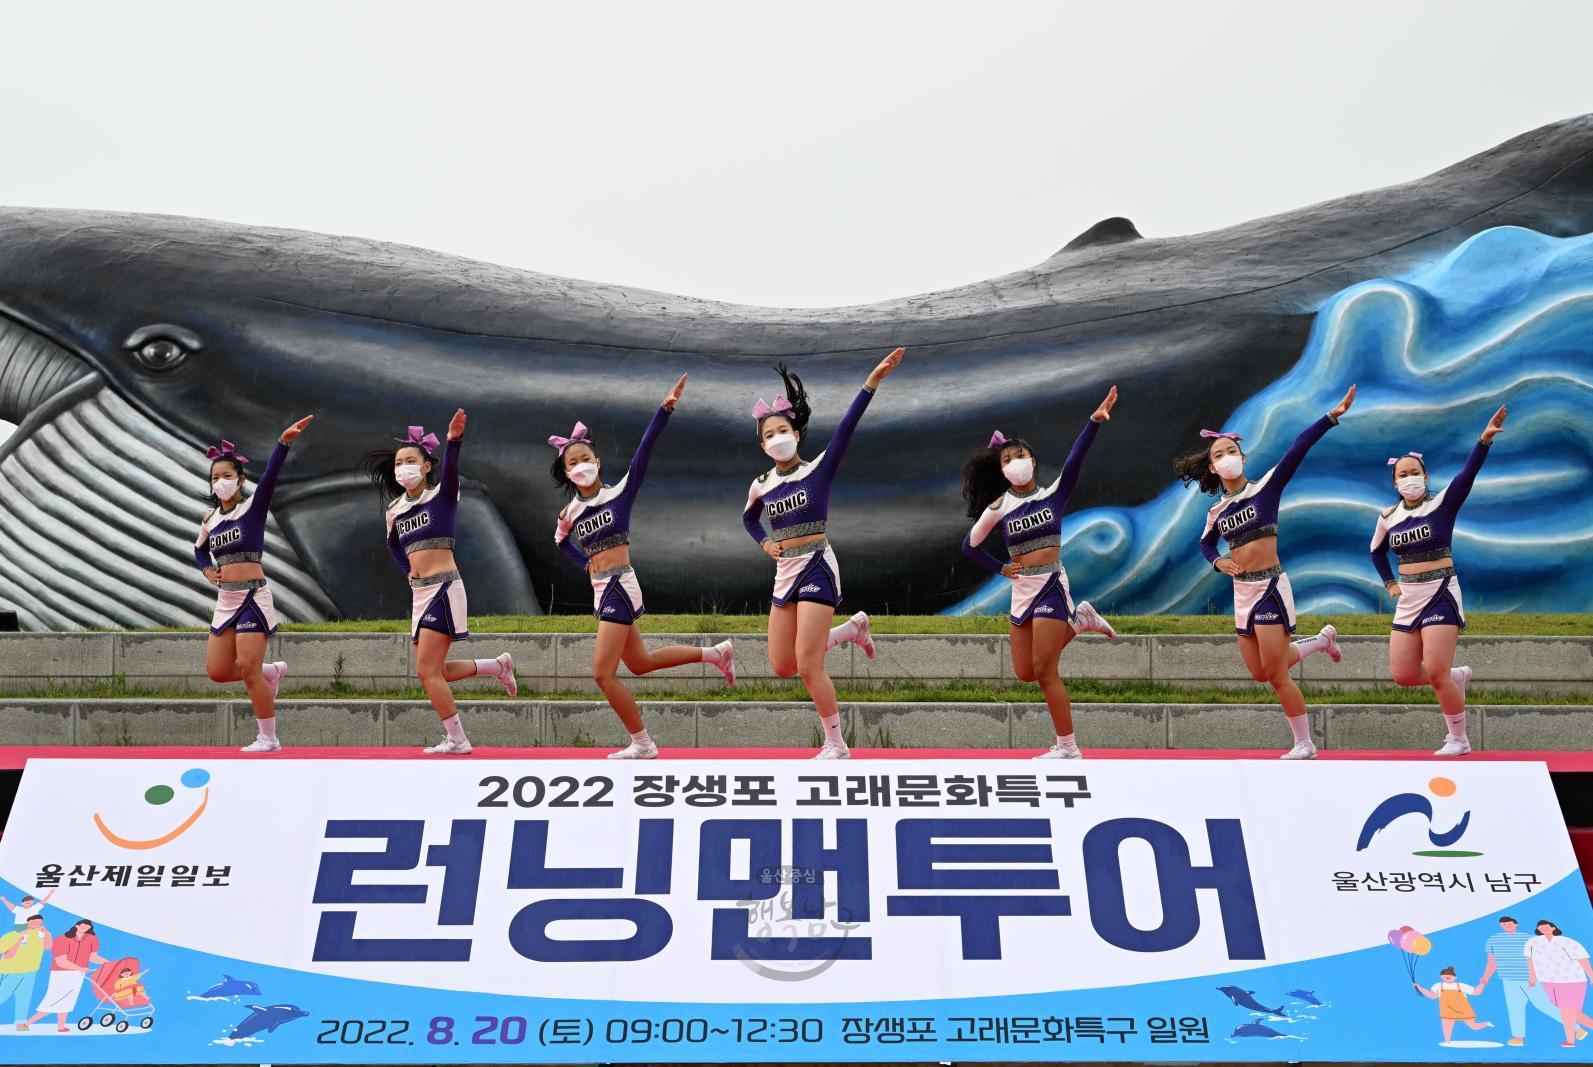 장생포 고래문화특구 런닝맨투어 의 사진